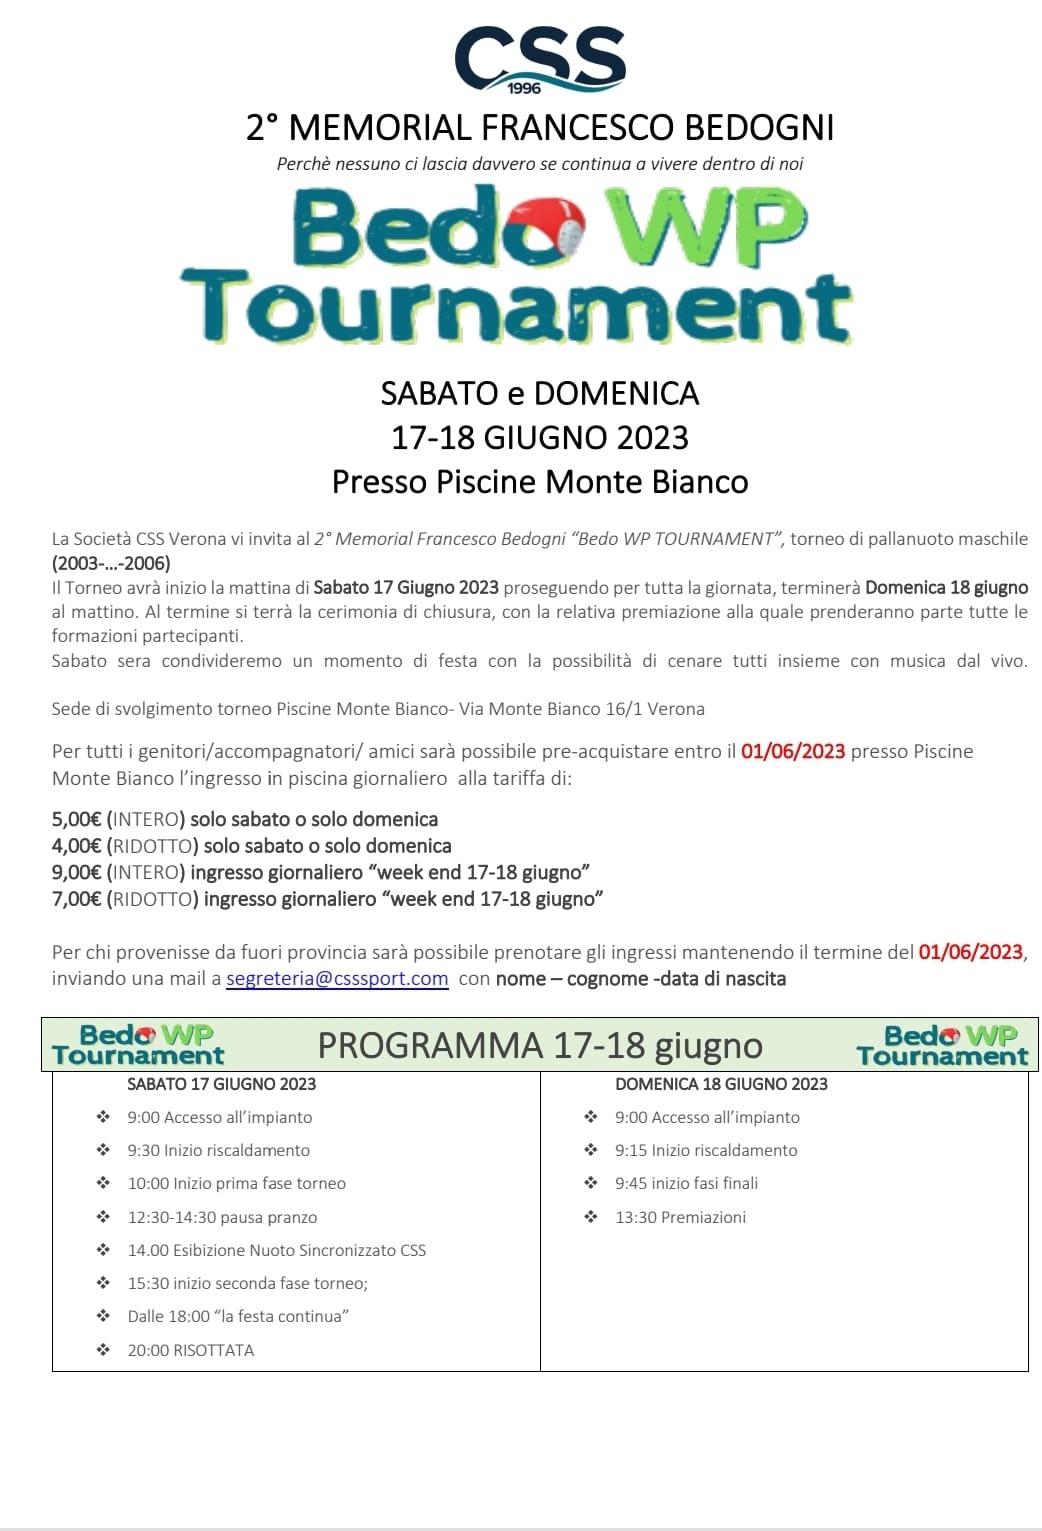 Tutti invitati il 17 e 18 giugno 2023 al 2* Memorial BEDO WP TOURNAMENT alla CSS piscine Monte Bianco di San Michele Extra a Verona.

Il 17….